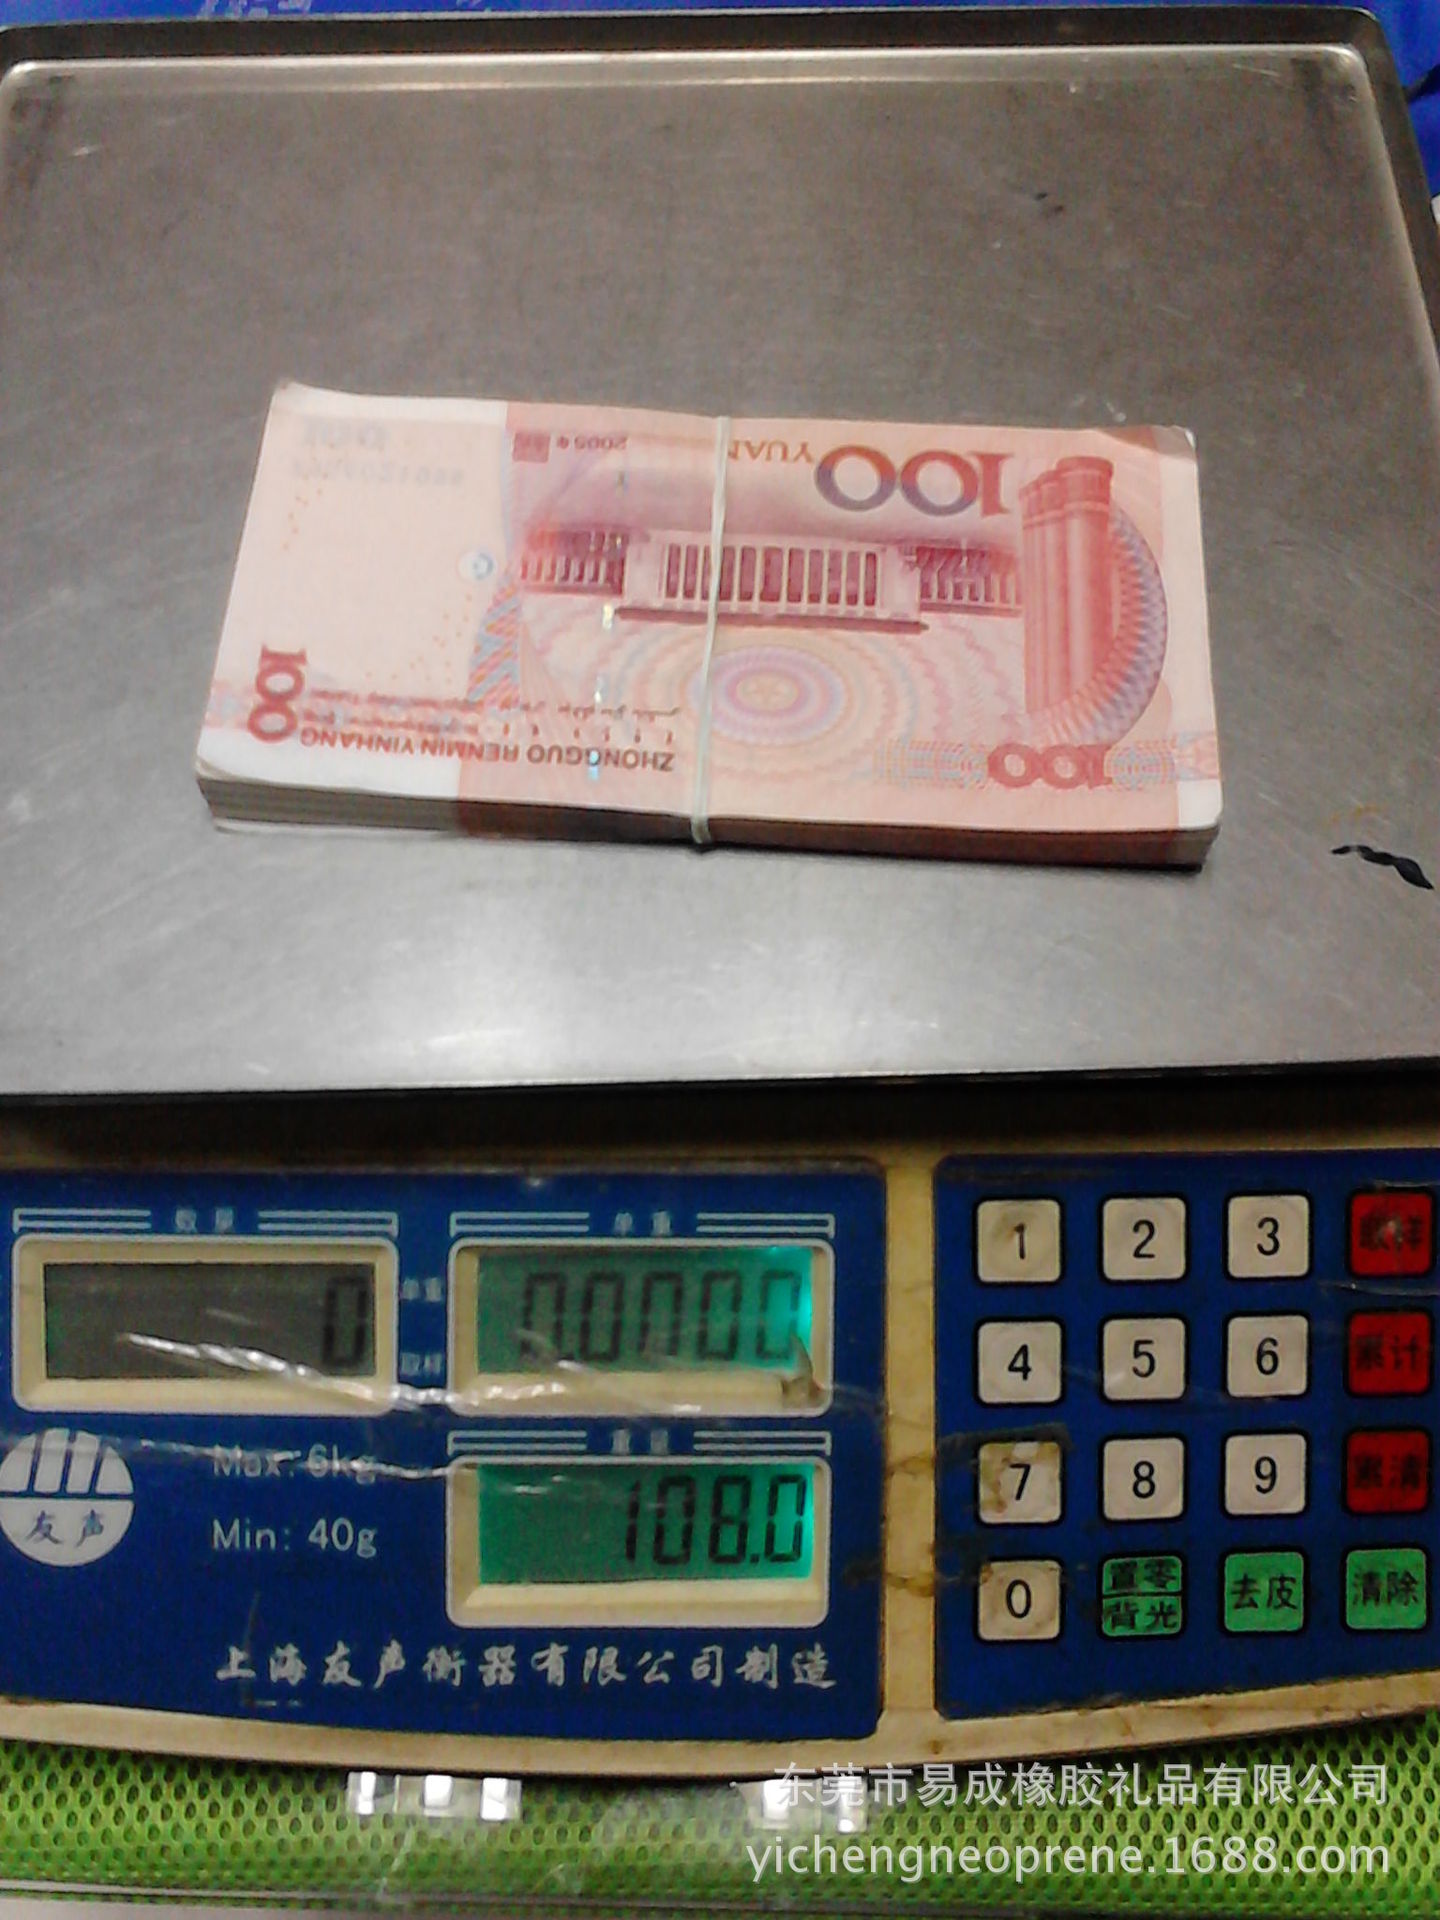 陈光标的16吨人民币RMB到底是多少钱,图片给